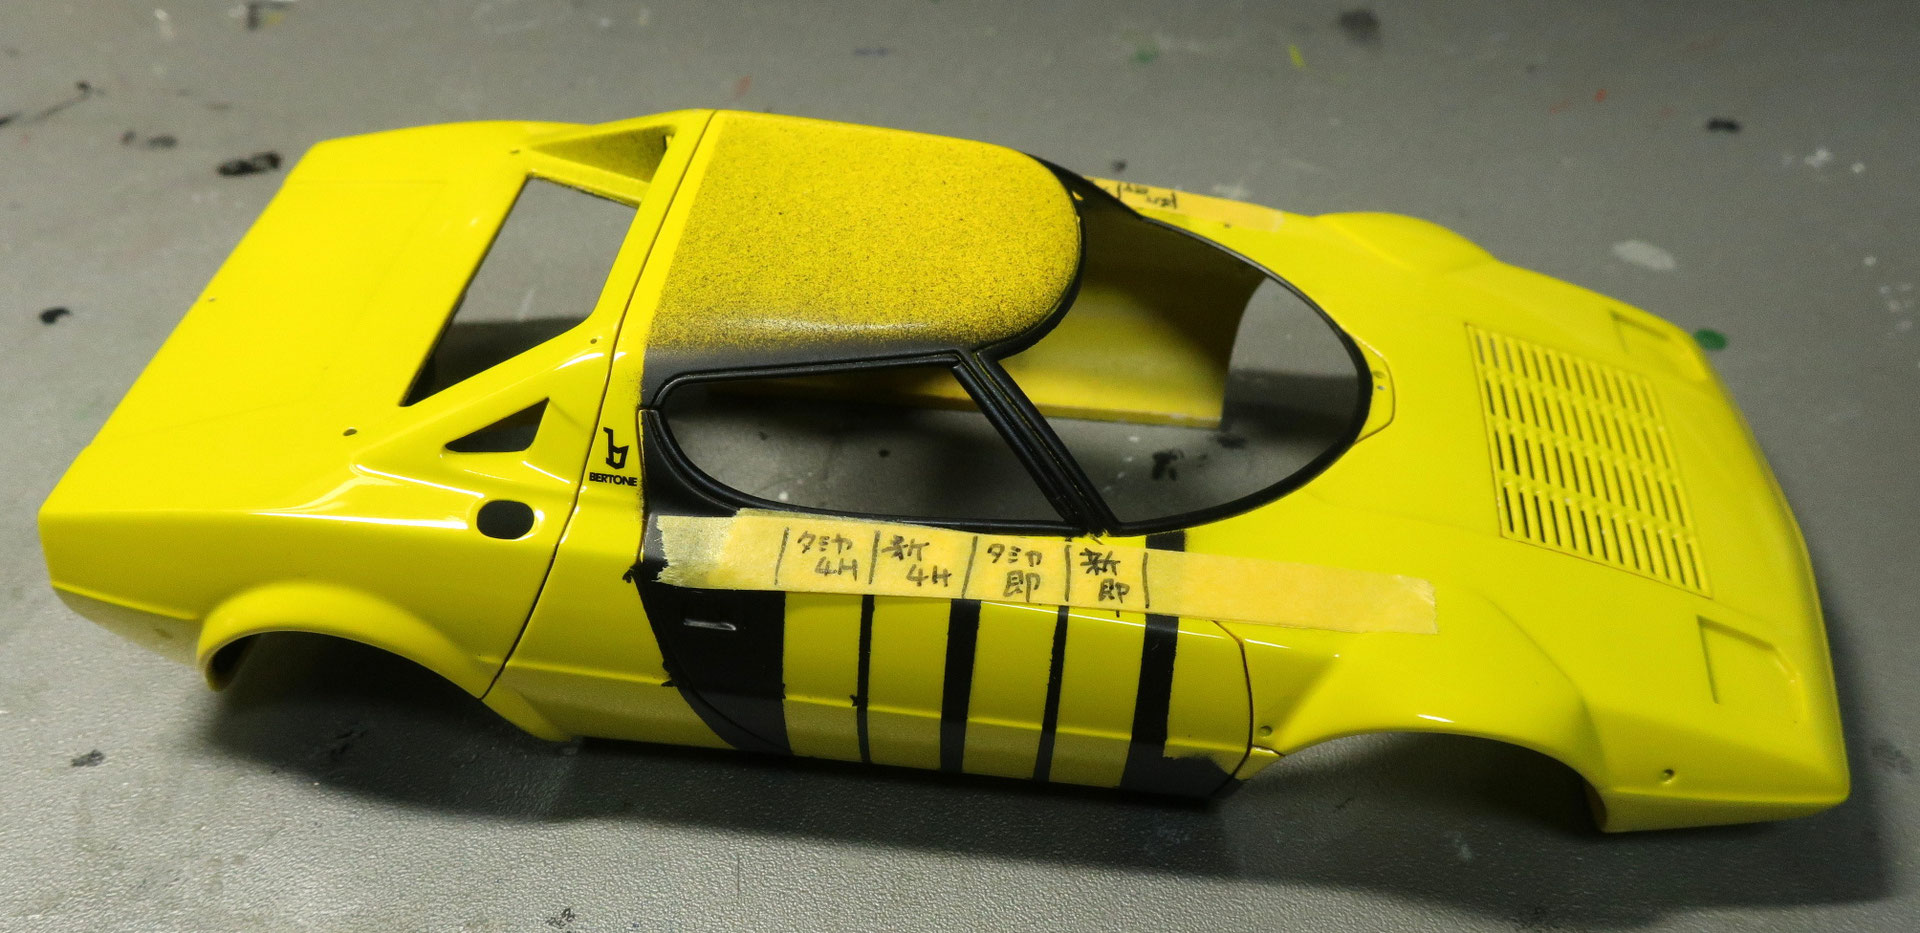 321 トラブルの検証 1 24に夢中 模型転倒虫のカーモデルページ 製作記 ギャラリー